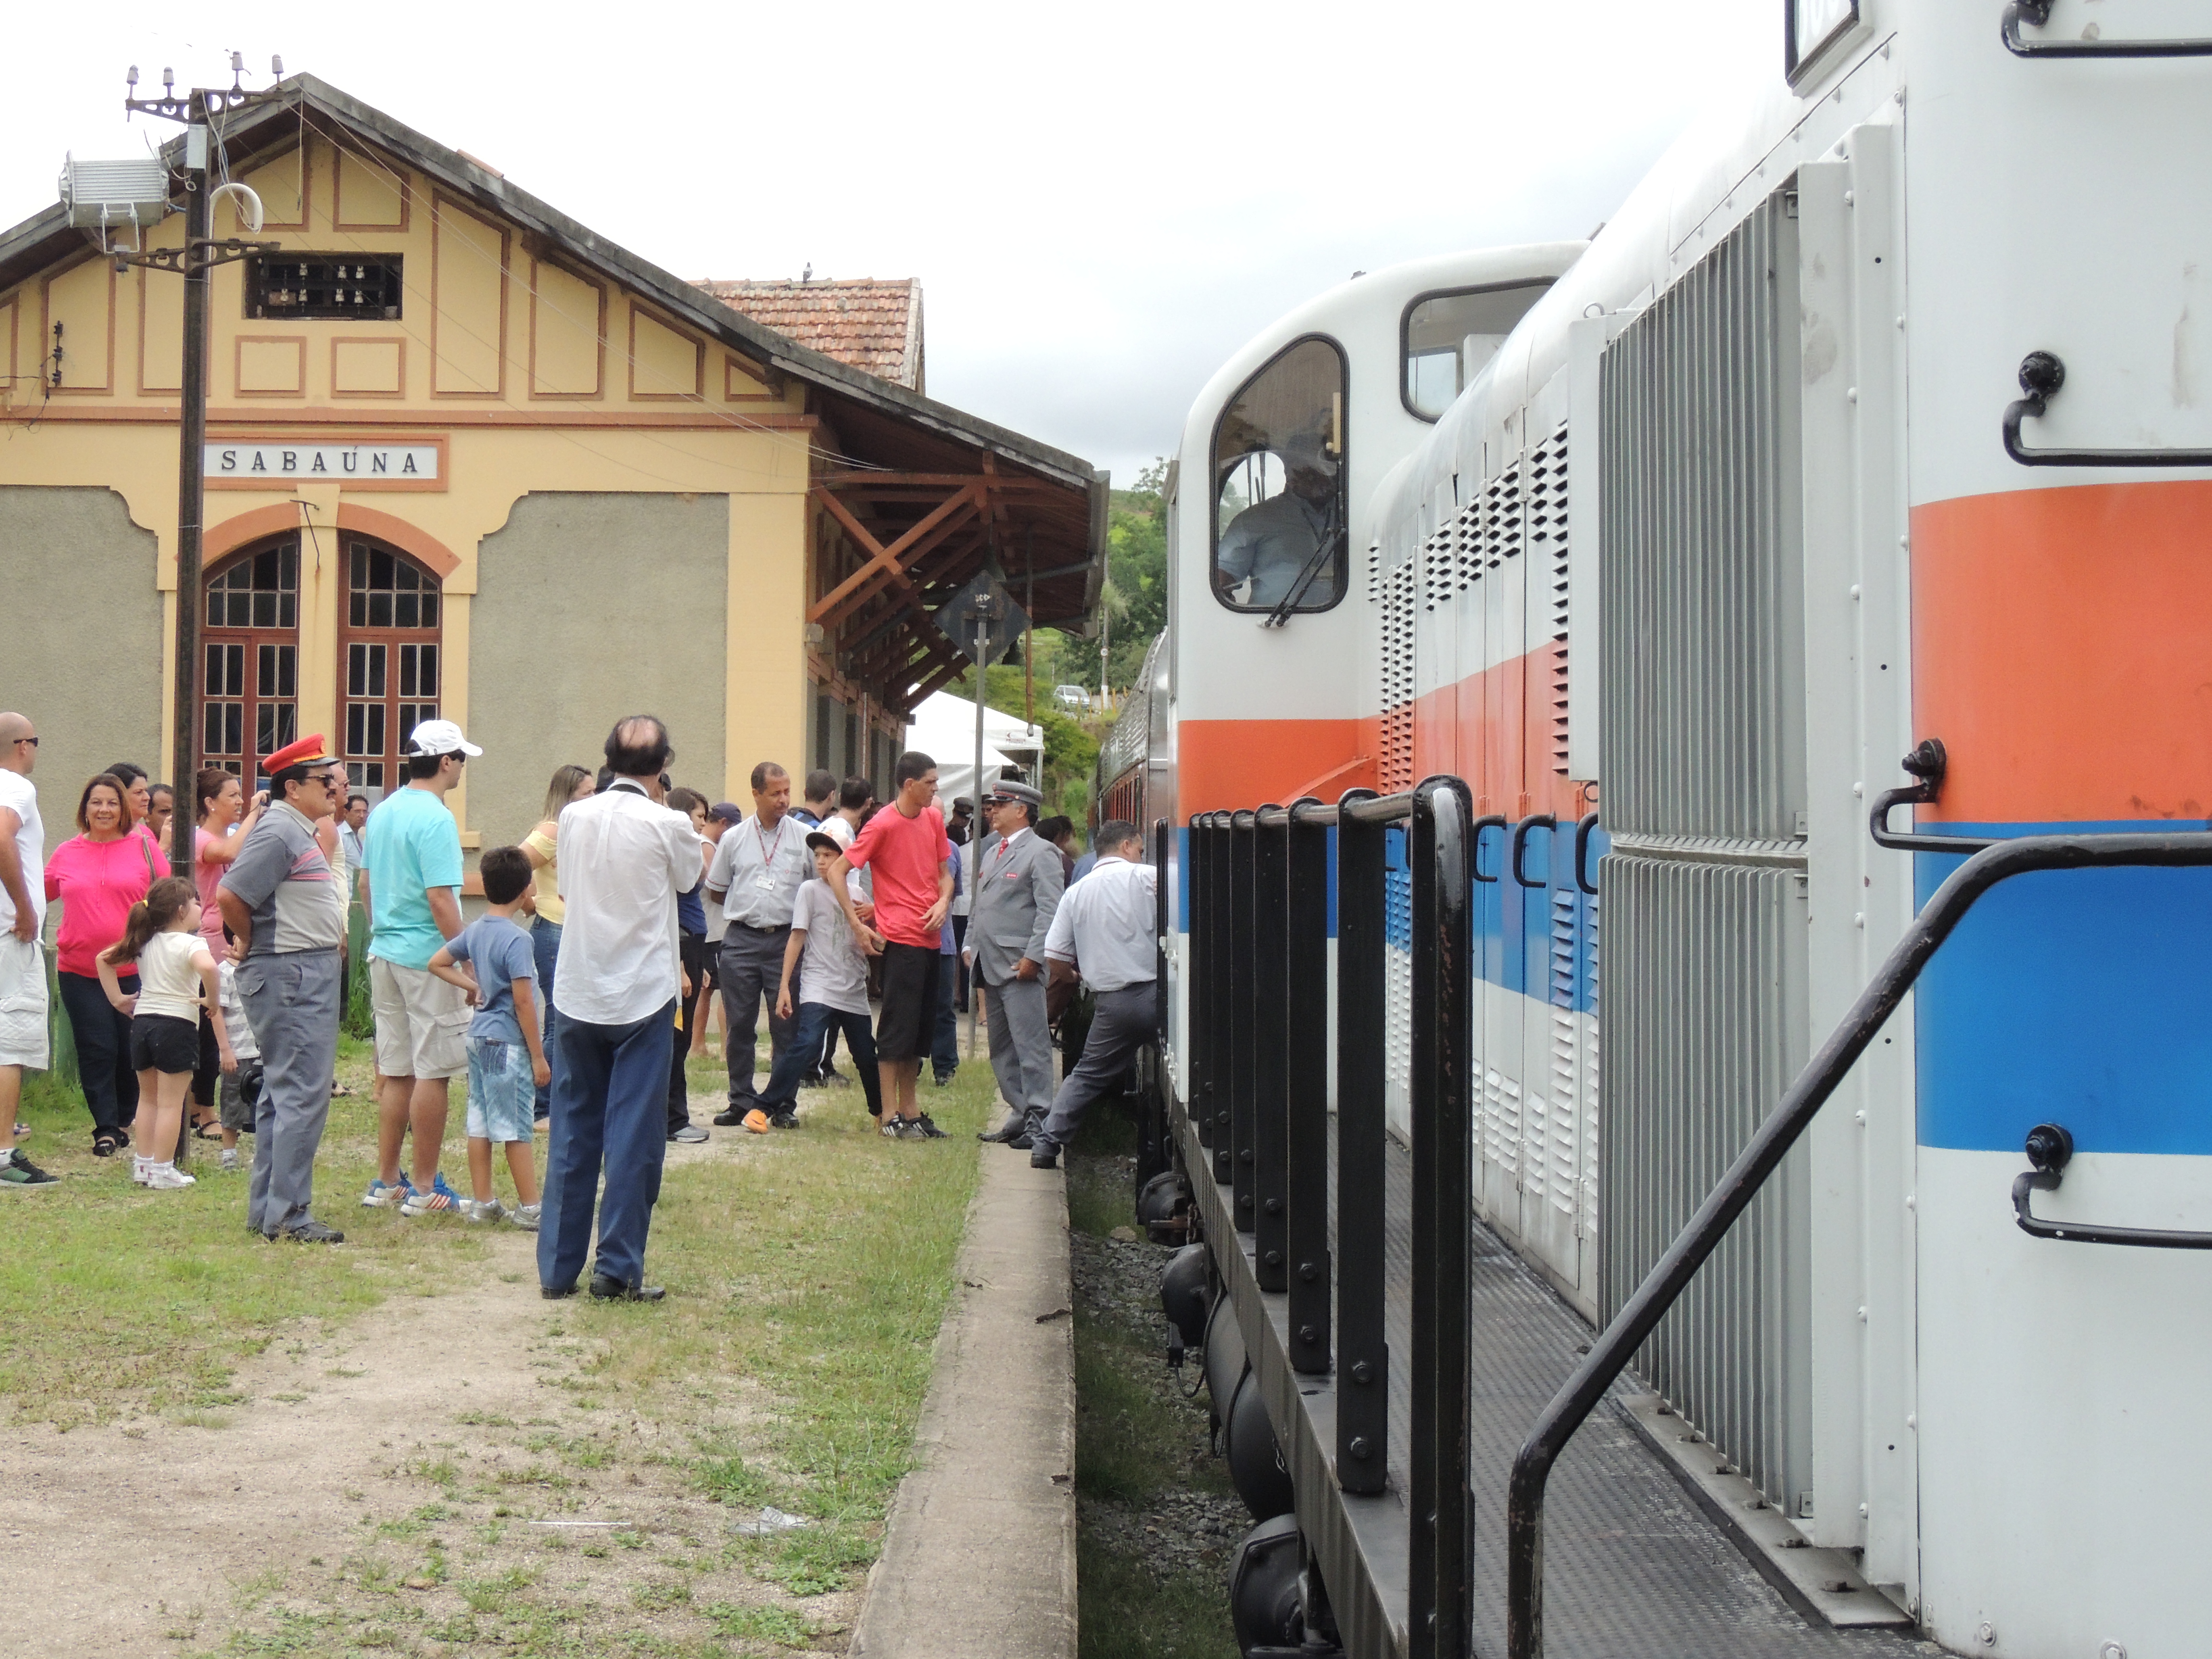 Desembarque na antiga estação ferroviária de Sabaúna